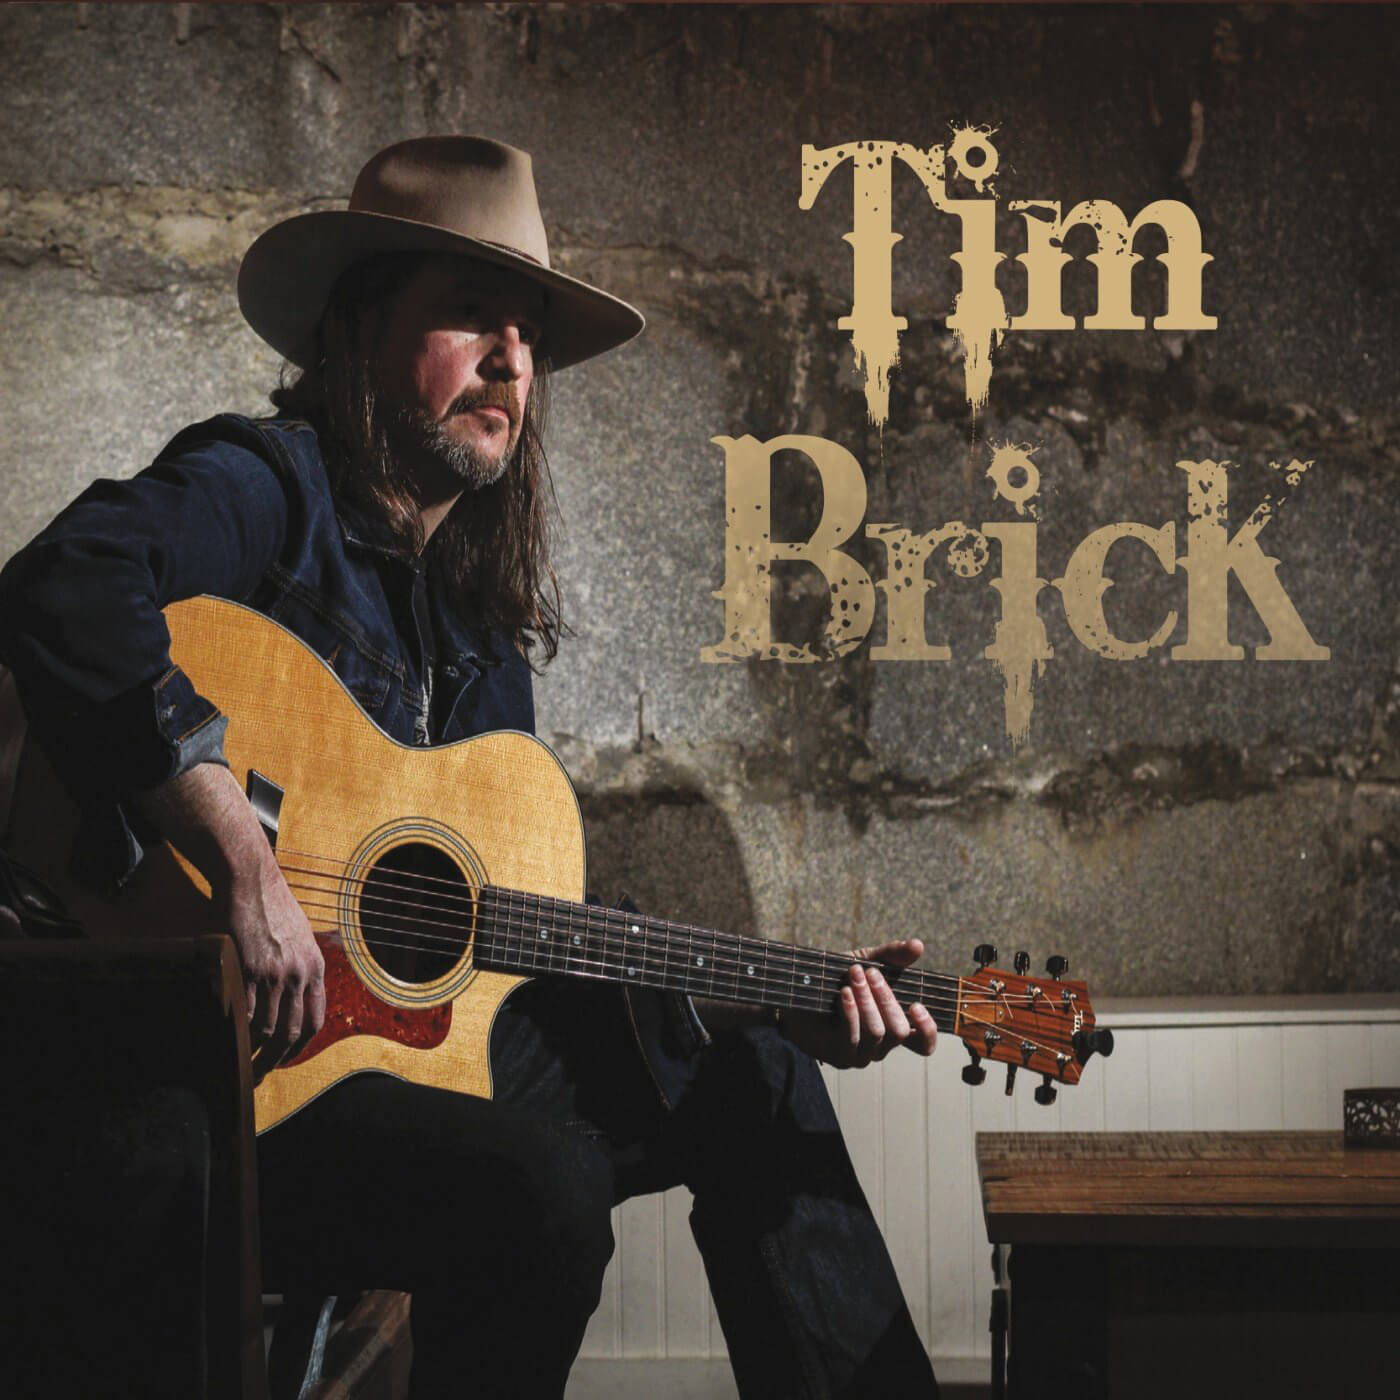 Tim Brick singer and song writer